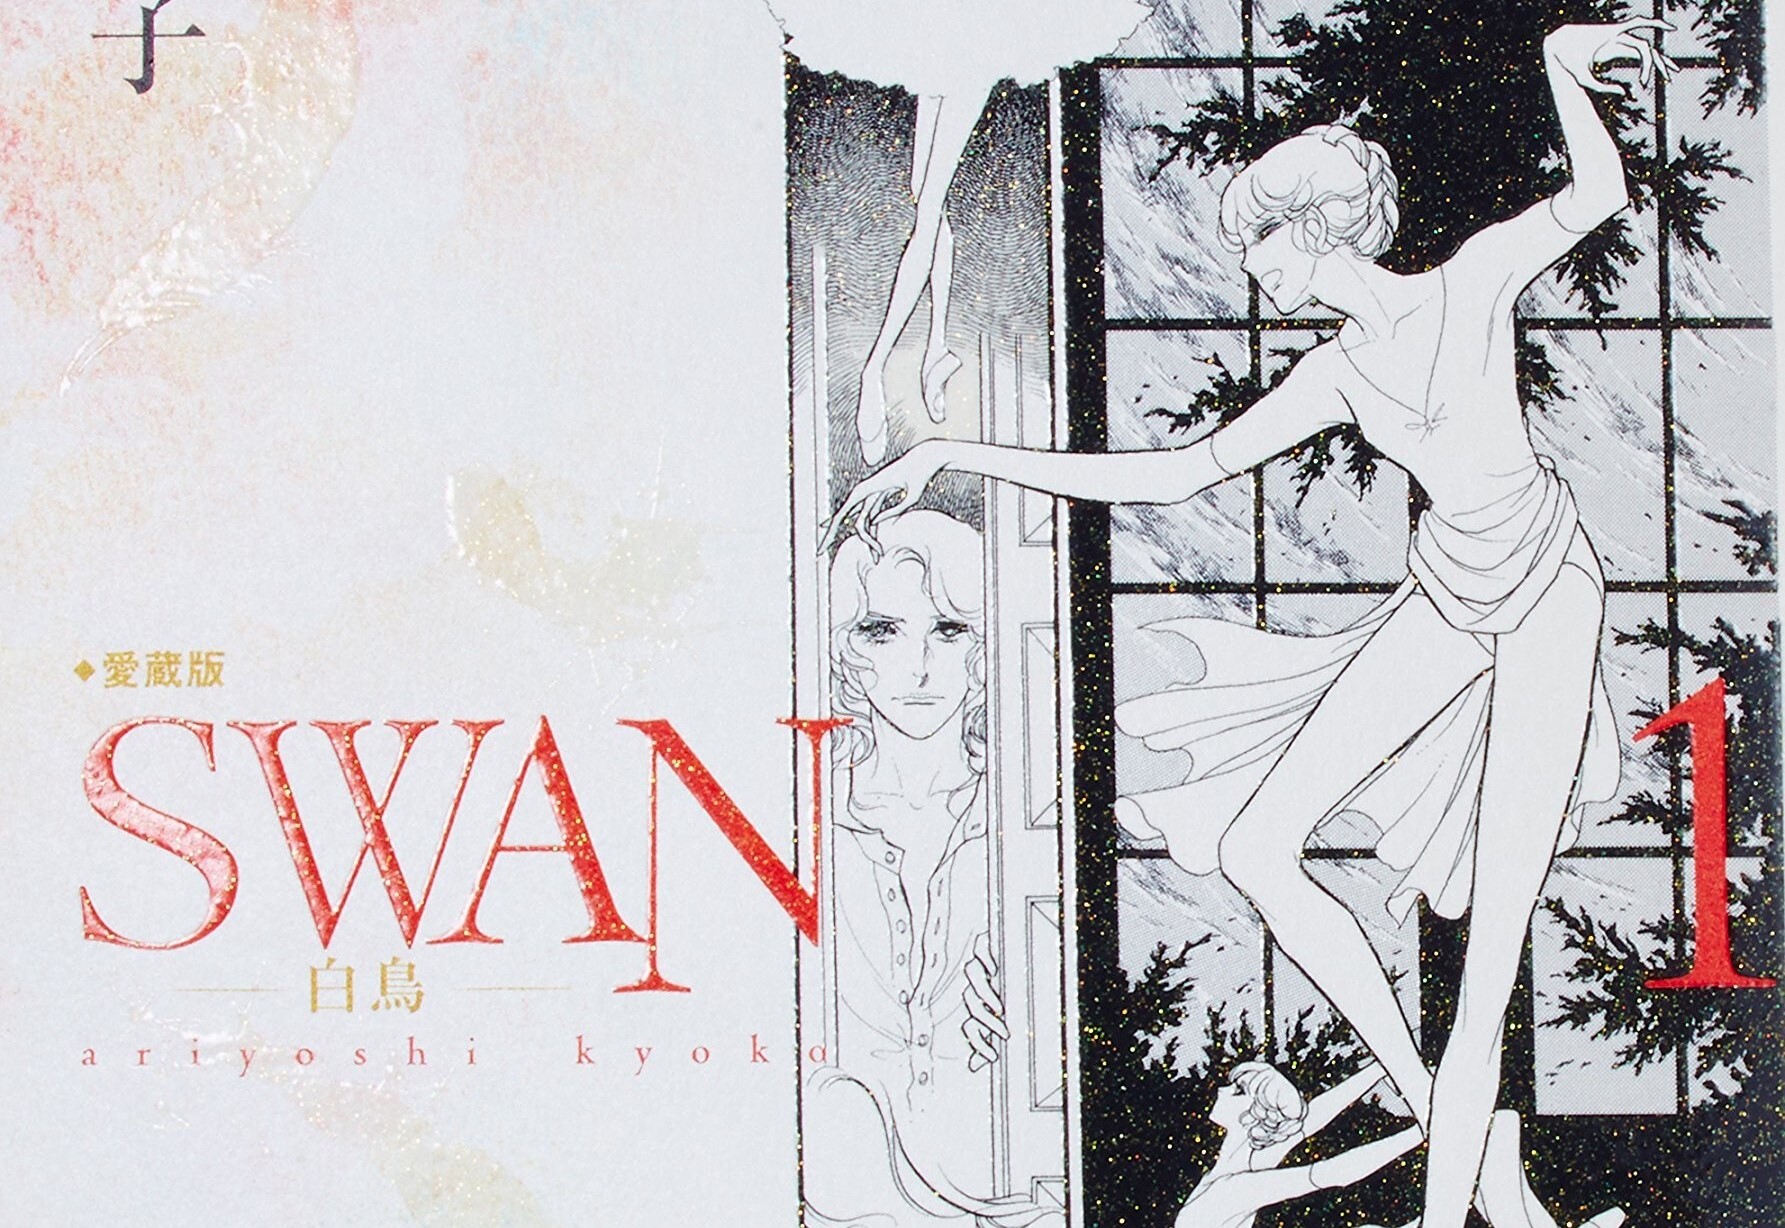 Swan - Il Cigno: In arrivo per Goen uno shoujo classico imperdibile